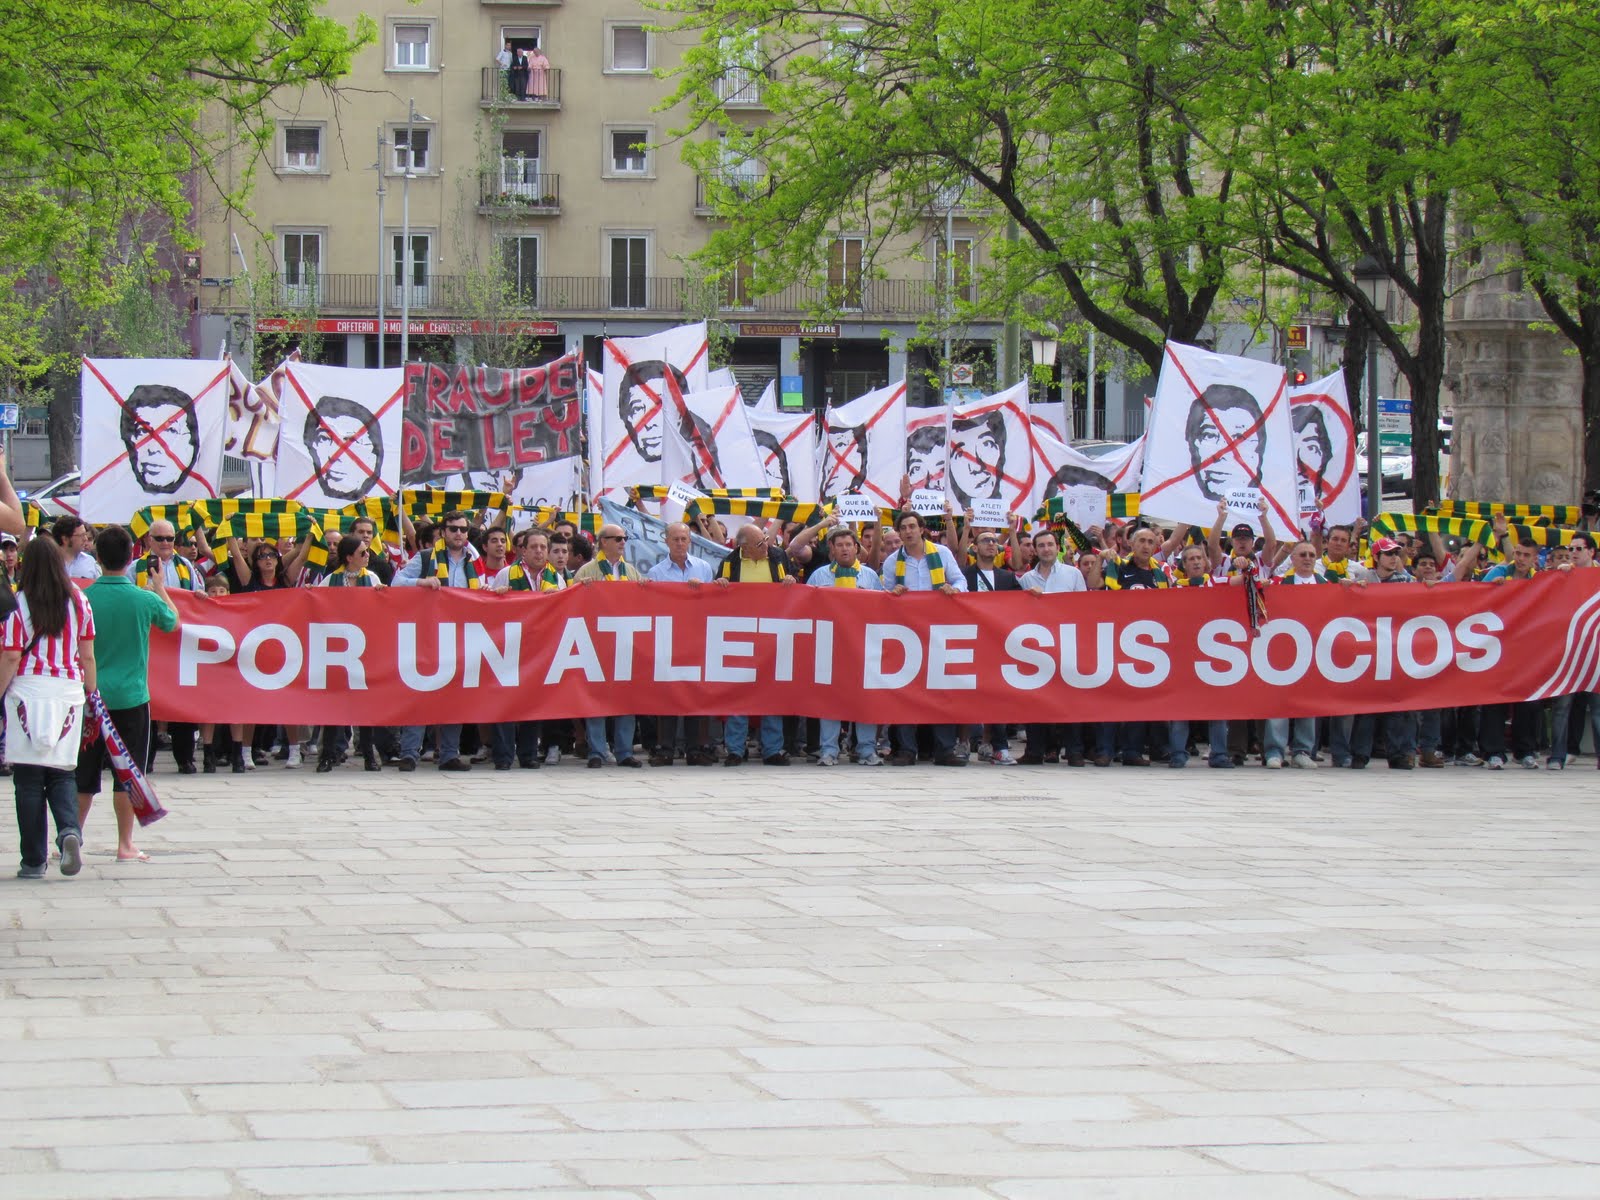 ATLETICO MADRID - Real Sociedad